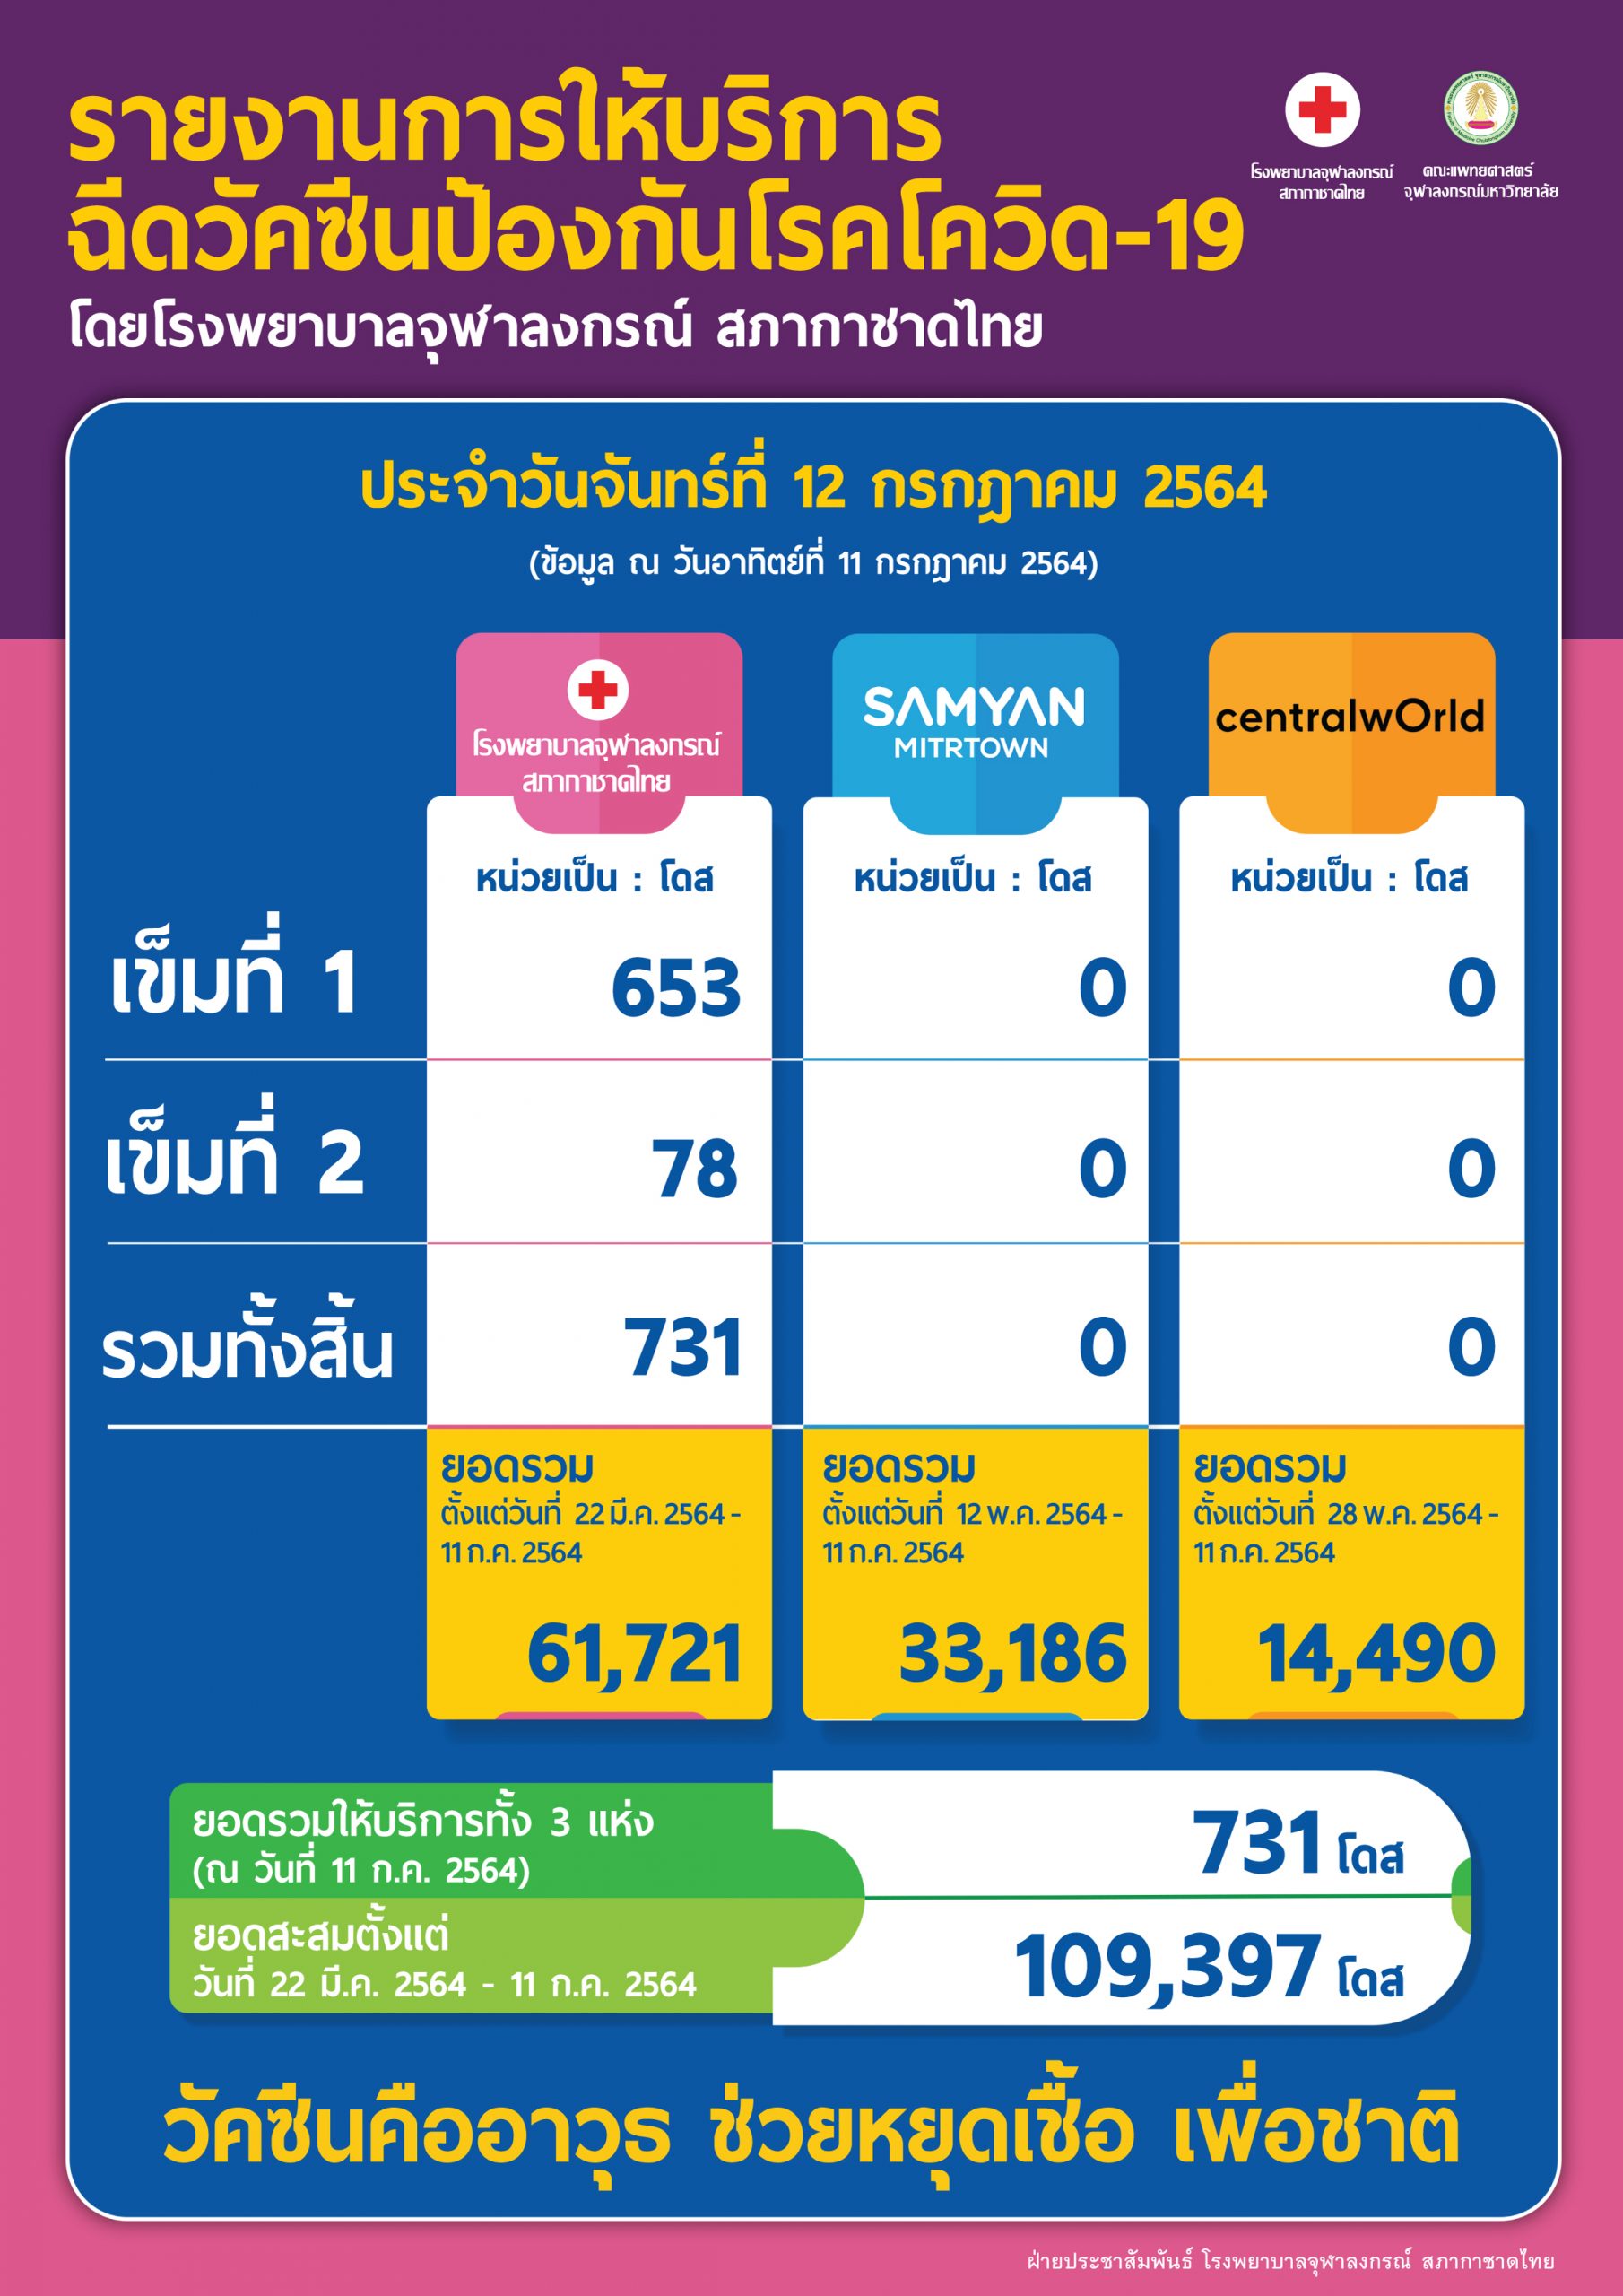 รายงานการให้บริการฉีดวัคซีนป้องกันโรคโควิด-19โดยโรงพยาบาลจุฬาลงกรณ์ สภากาชาดไทย ประจำวันจันทร์ที่ 12 กรกฎาคม 2564